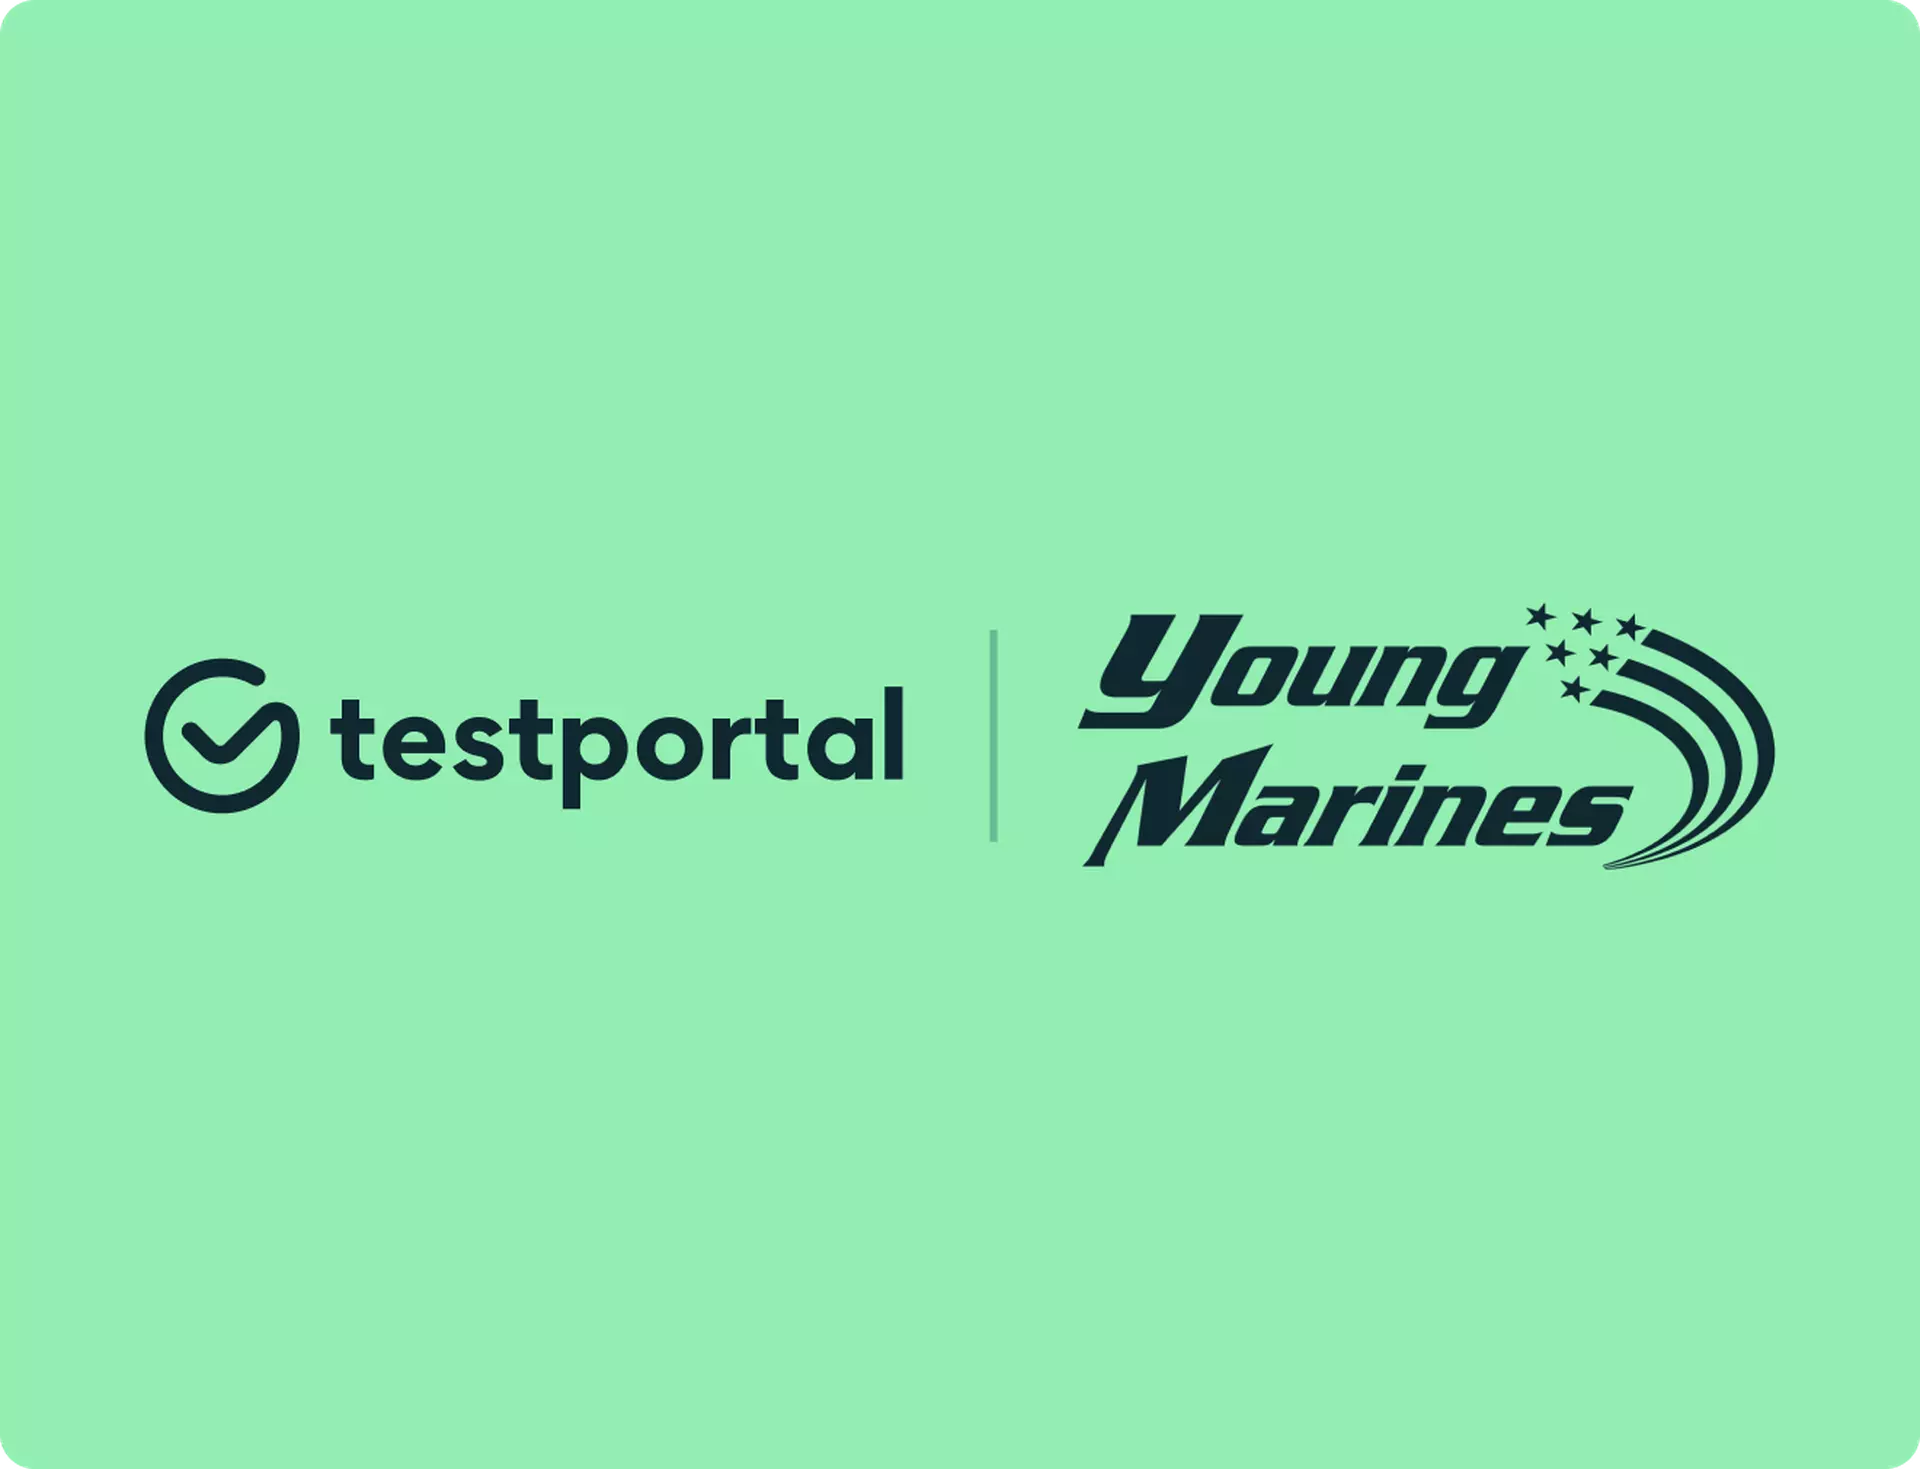 Young Marines and Testportal logos.